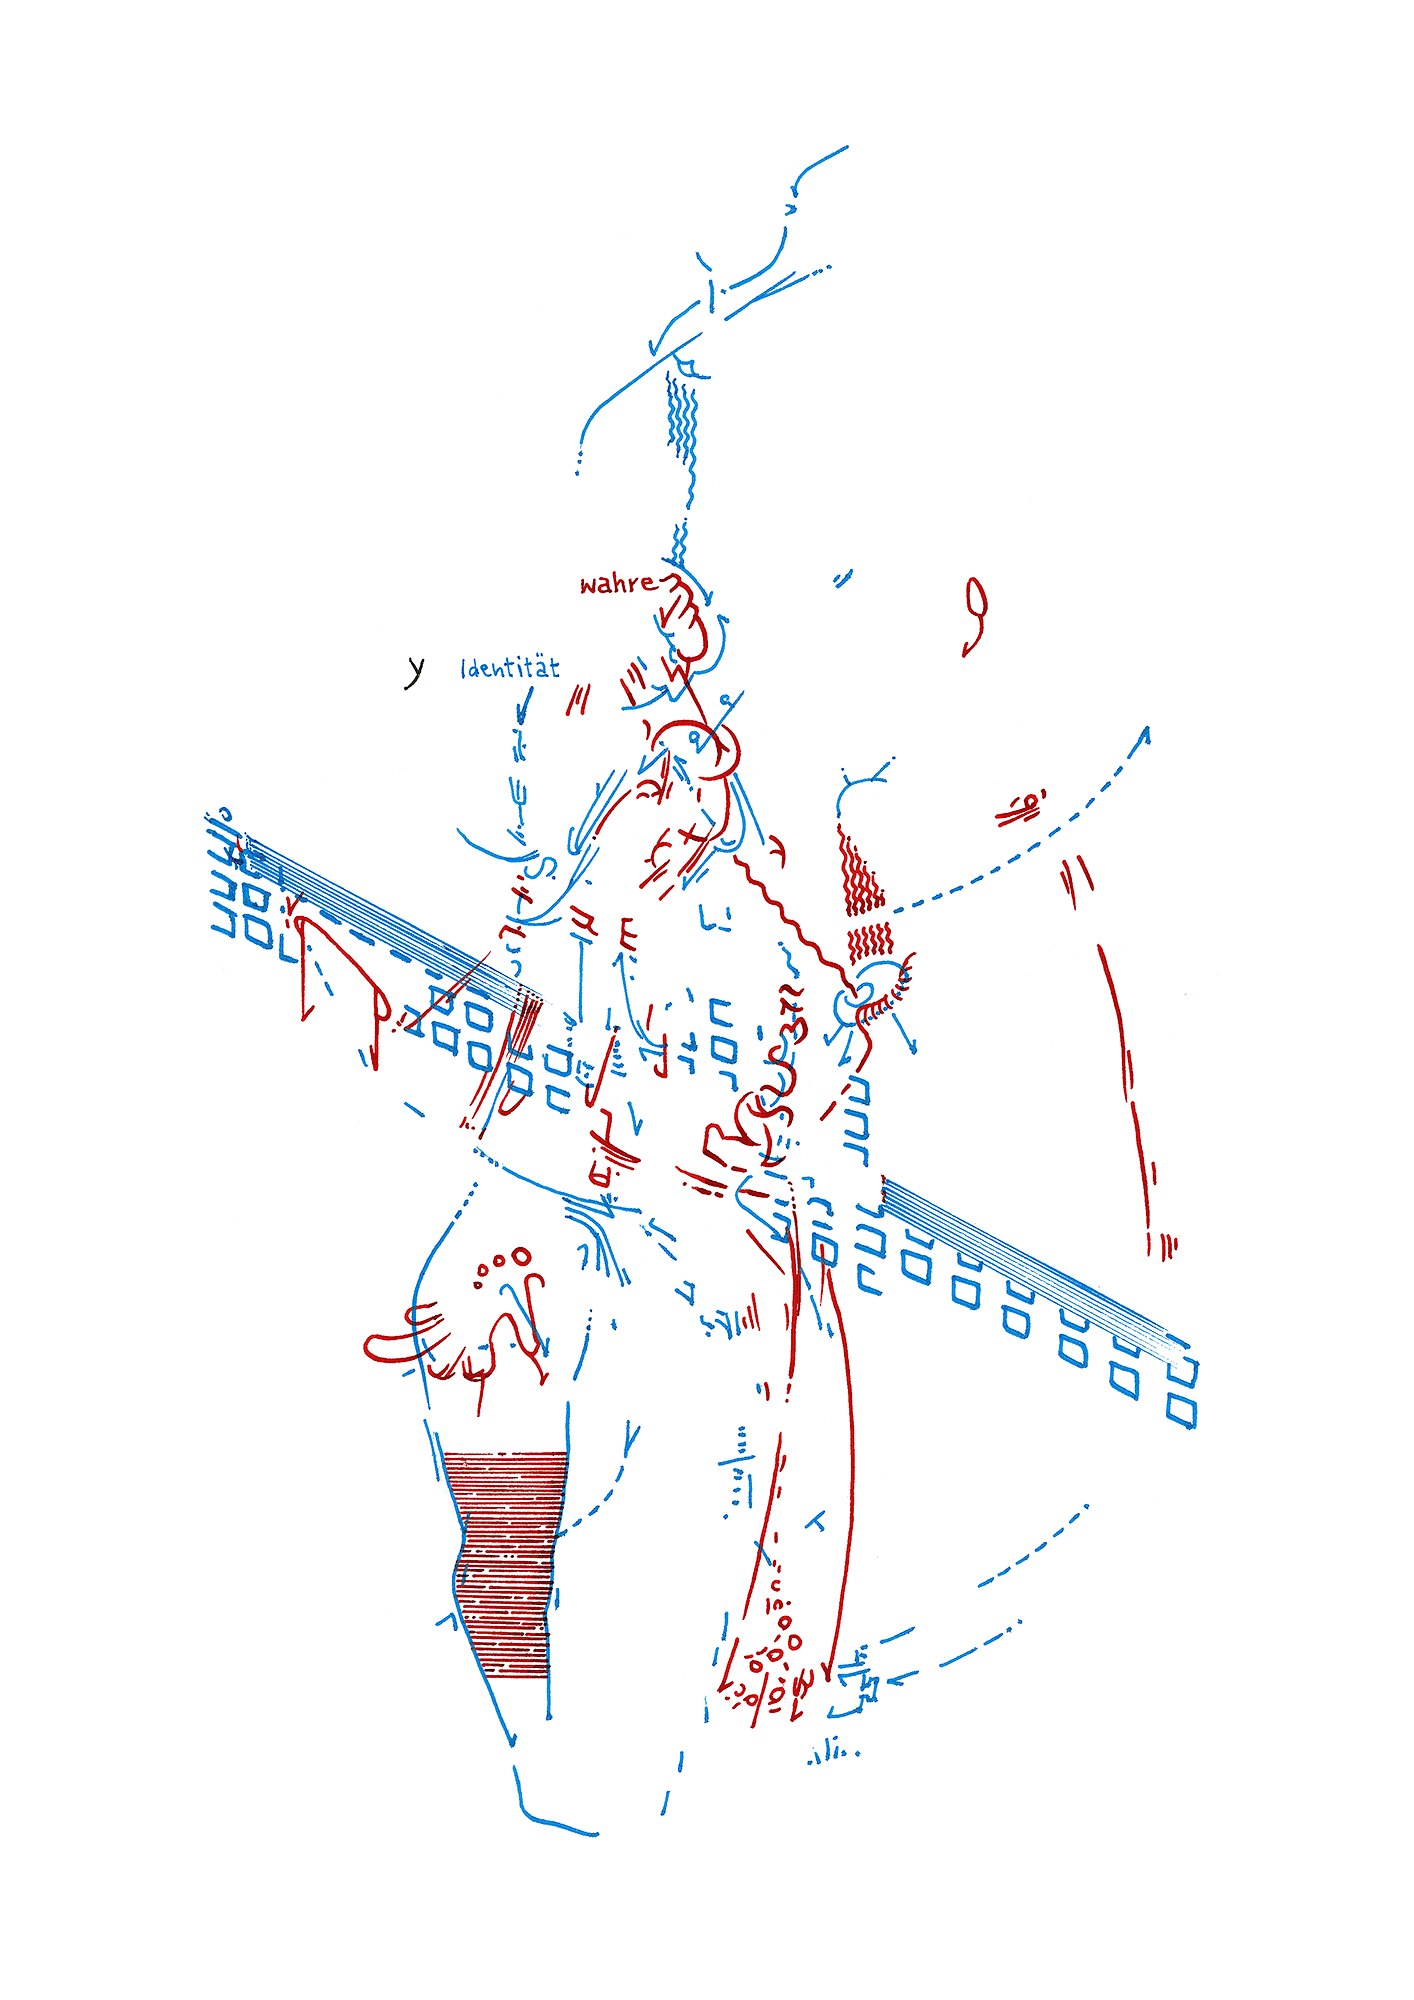 Hannes Kater: Tageszeichnung (Zeichnung/drawing) vom 02.11.2015 (1414 x 2000 Pixel)